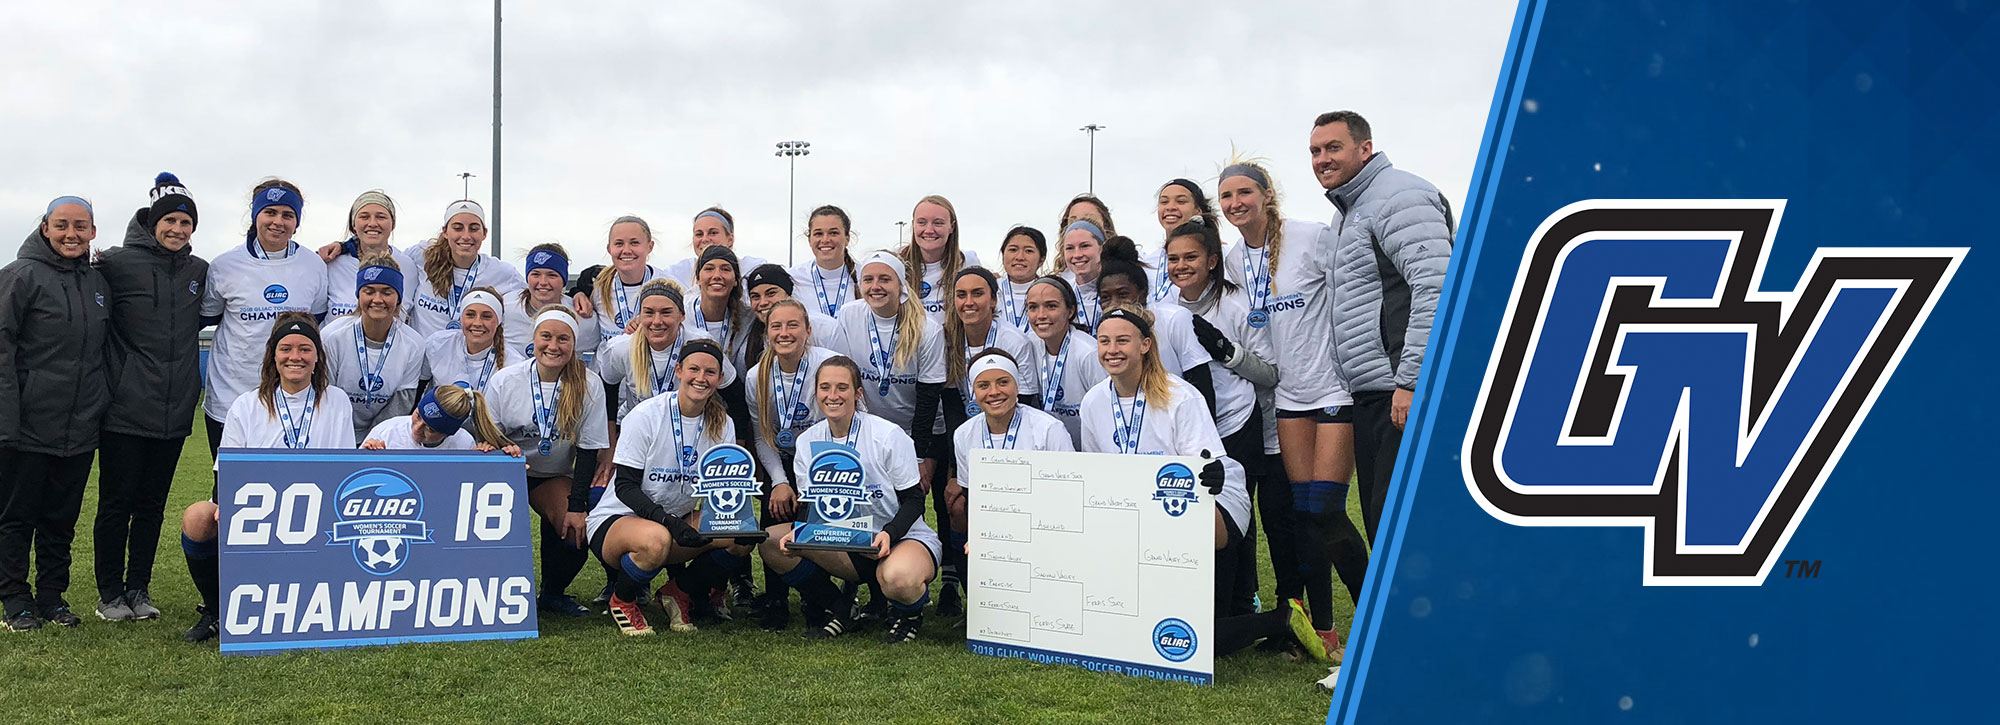 GVSU Wins 12th Consecutive GLIAC Women's Soccer Tournament Title